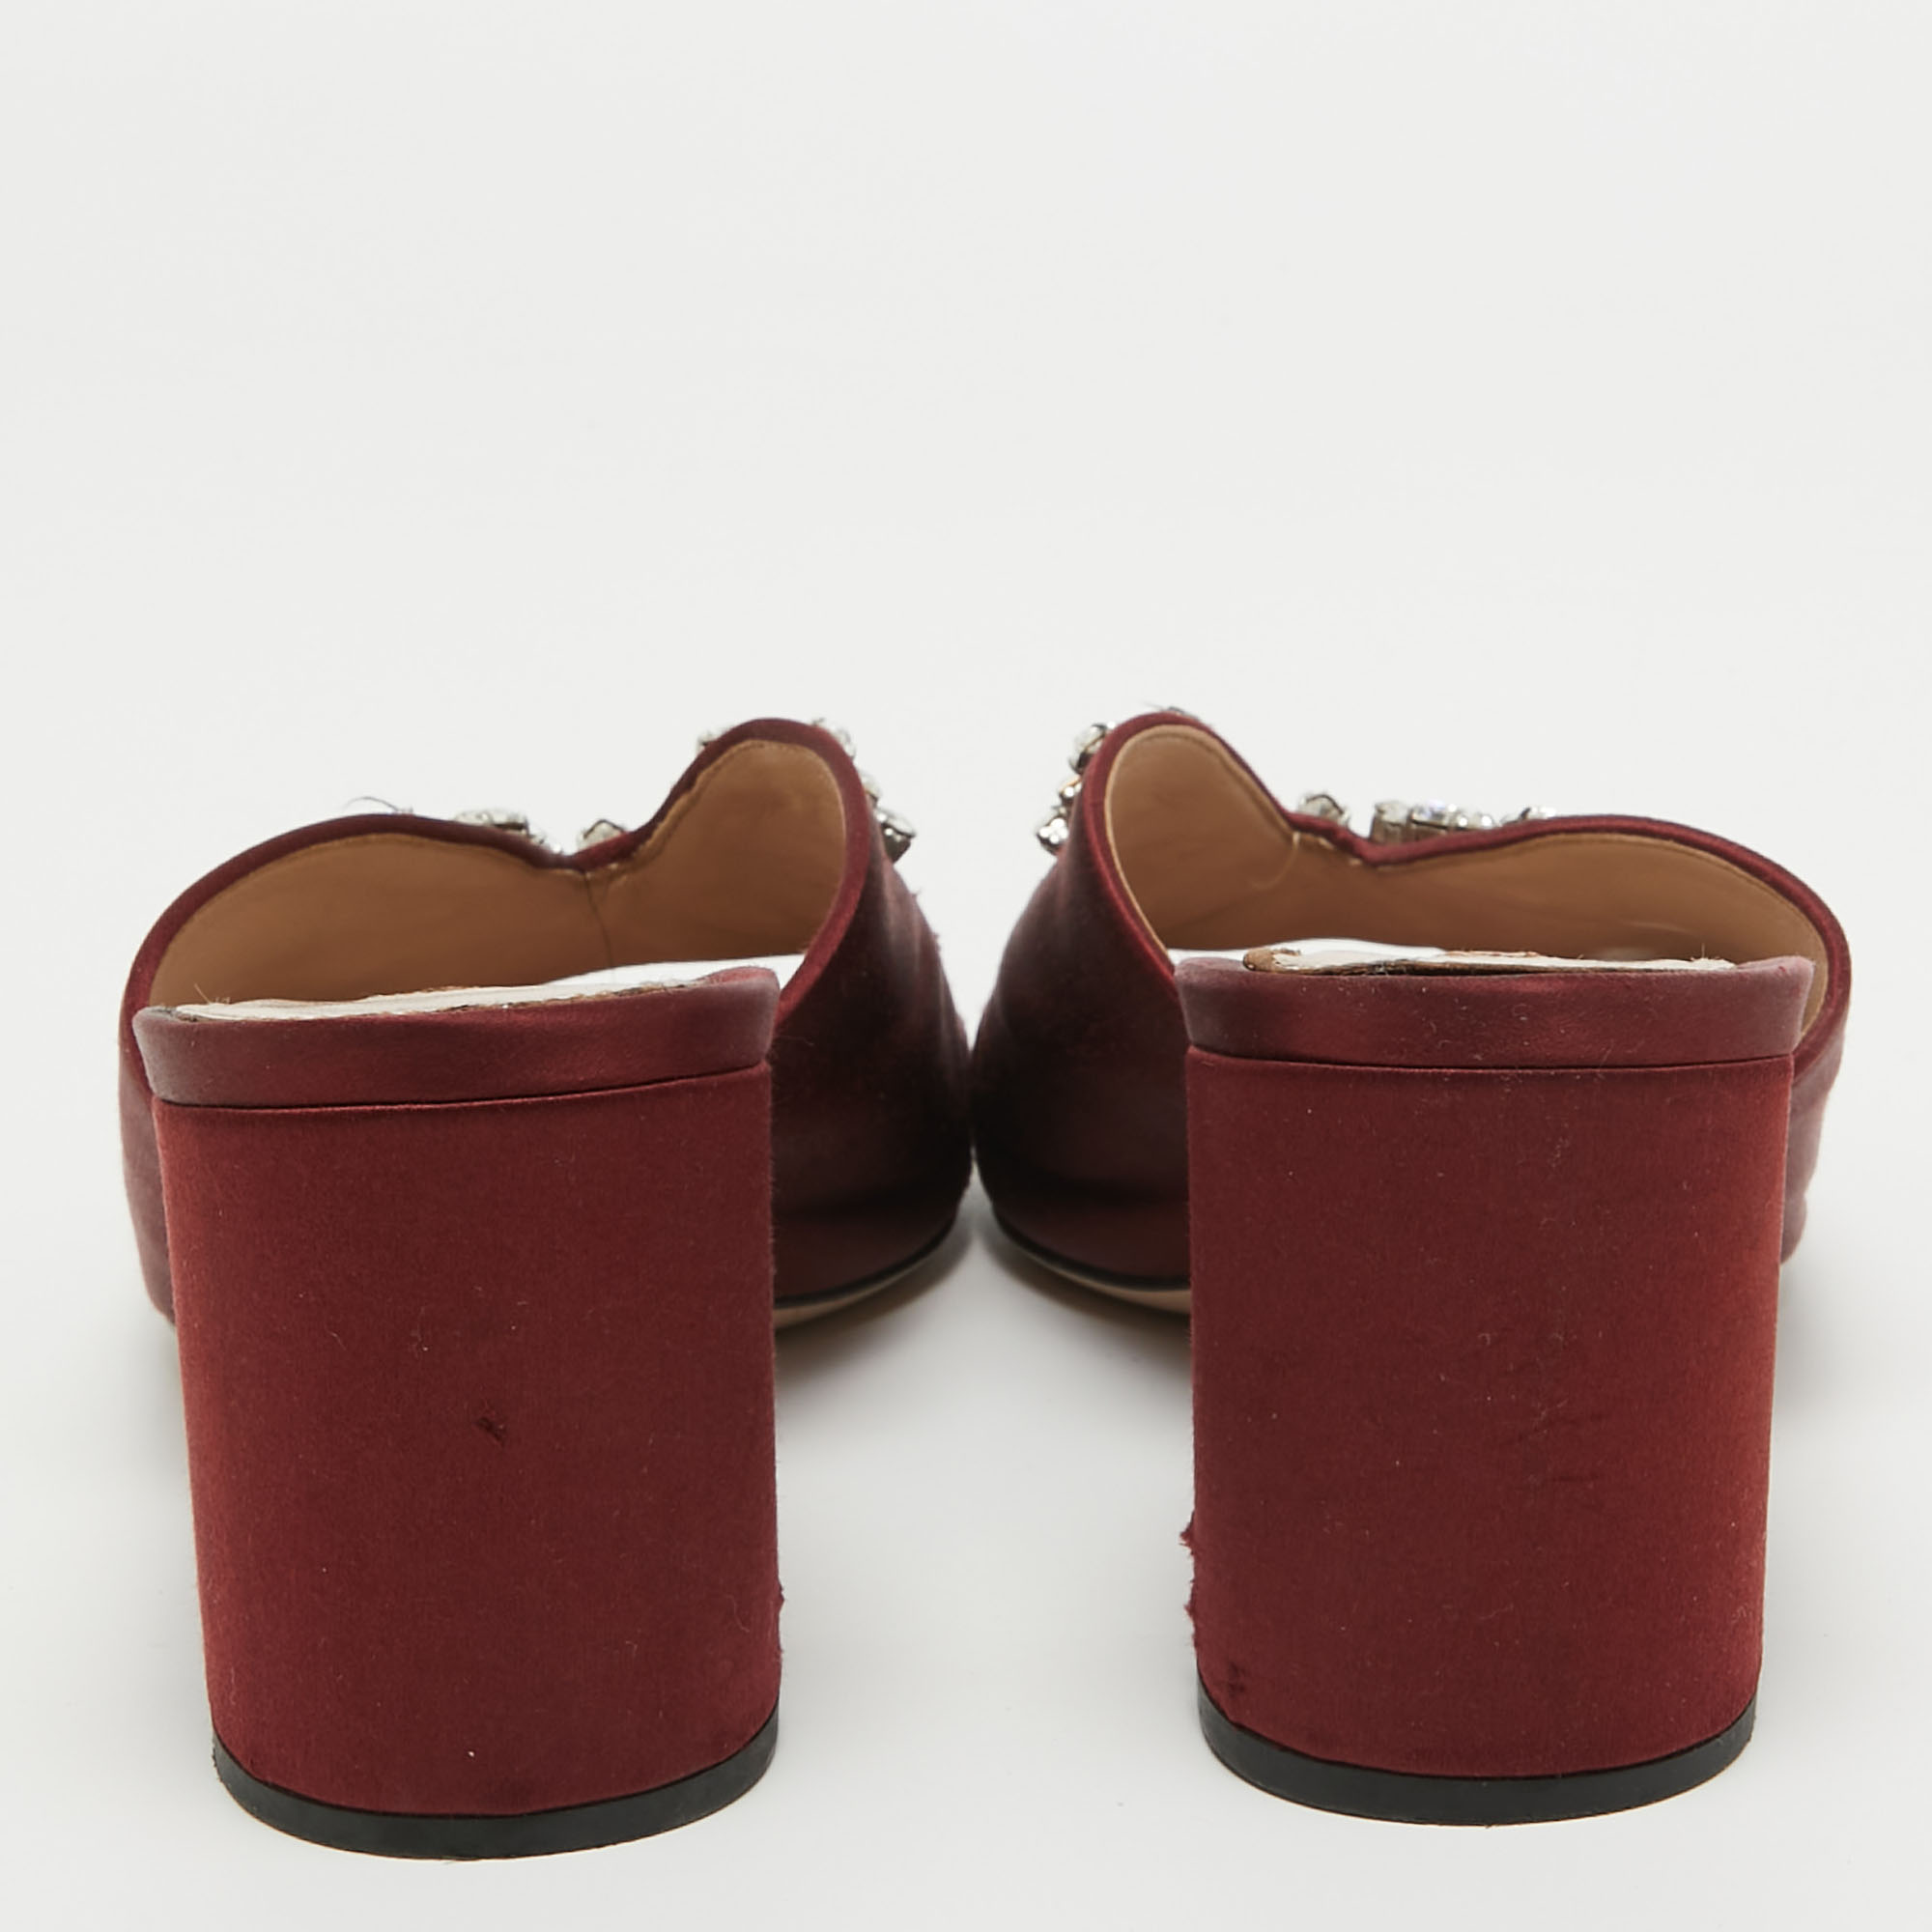 Miu Miu Burgundy Satin Crystal Embellished Slide Sandals Size 41